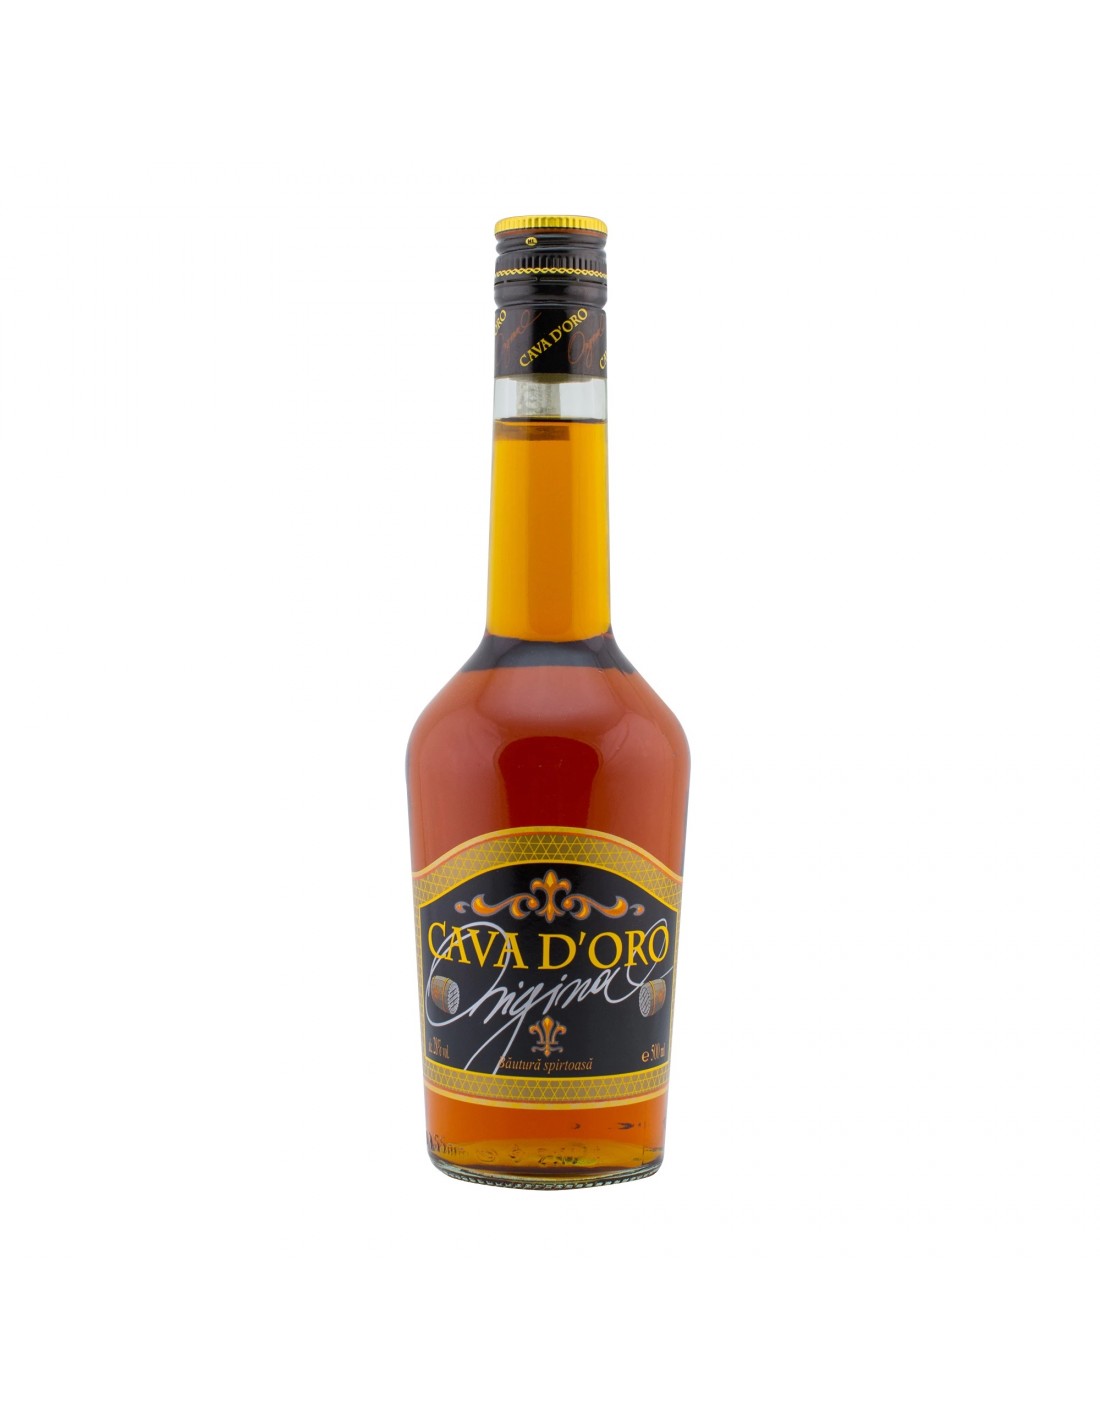 Brandy Cava D’oro, 28% alc., 0.5L alcooldiscount.ro